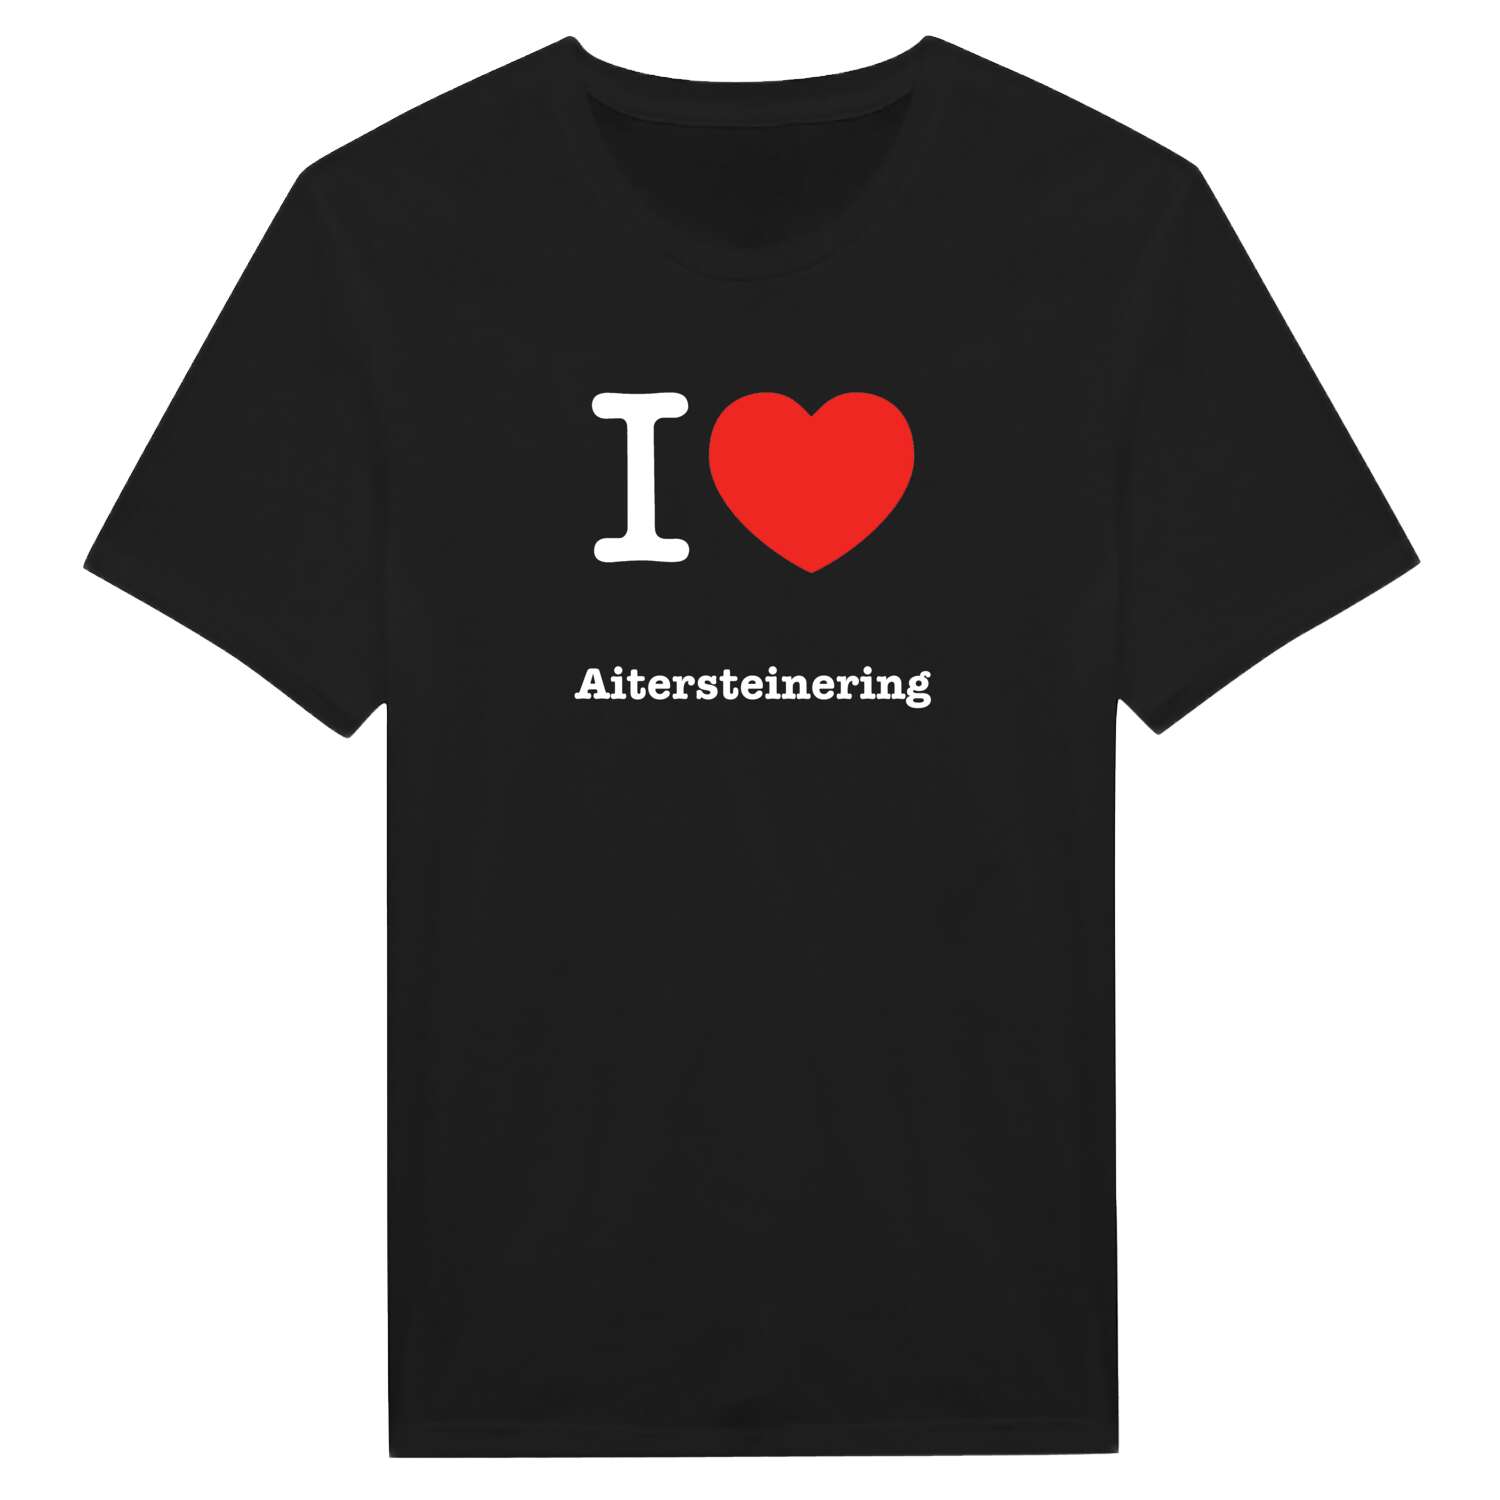 Aitersteinering T-Shirt »I love«